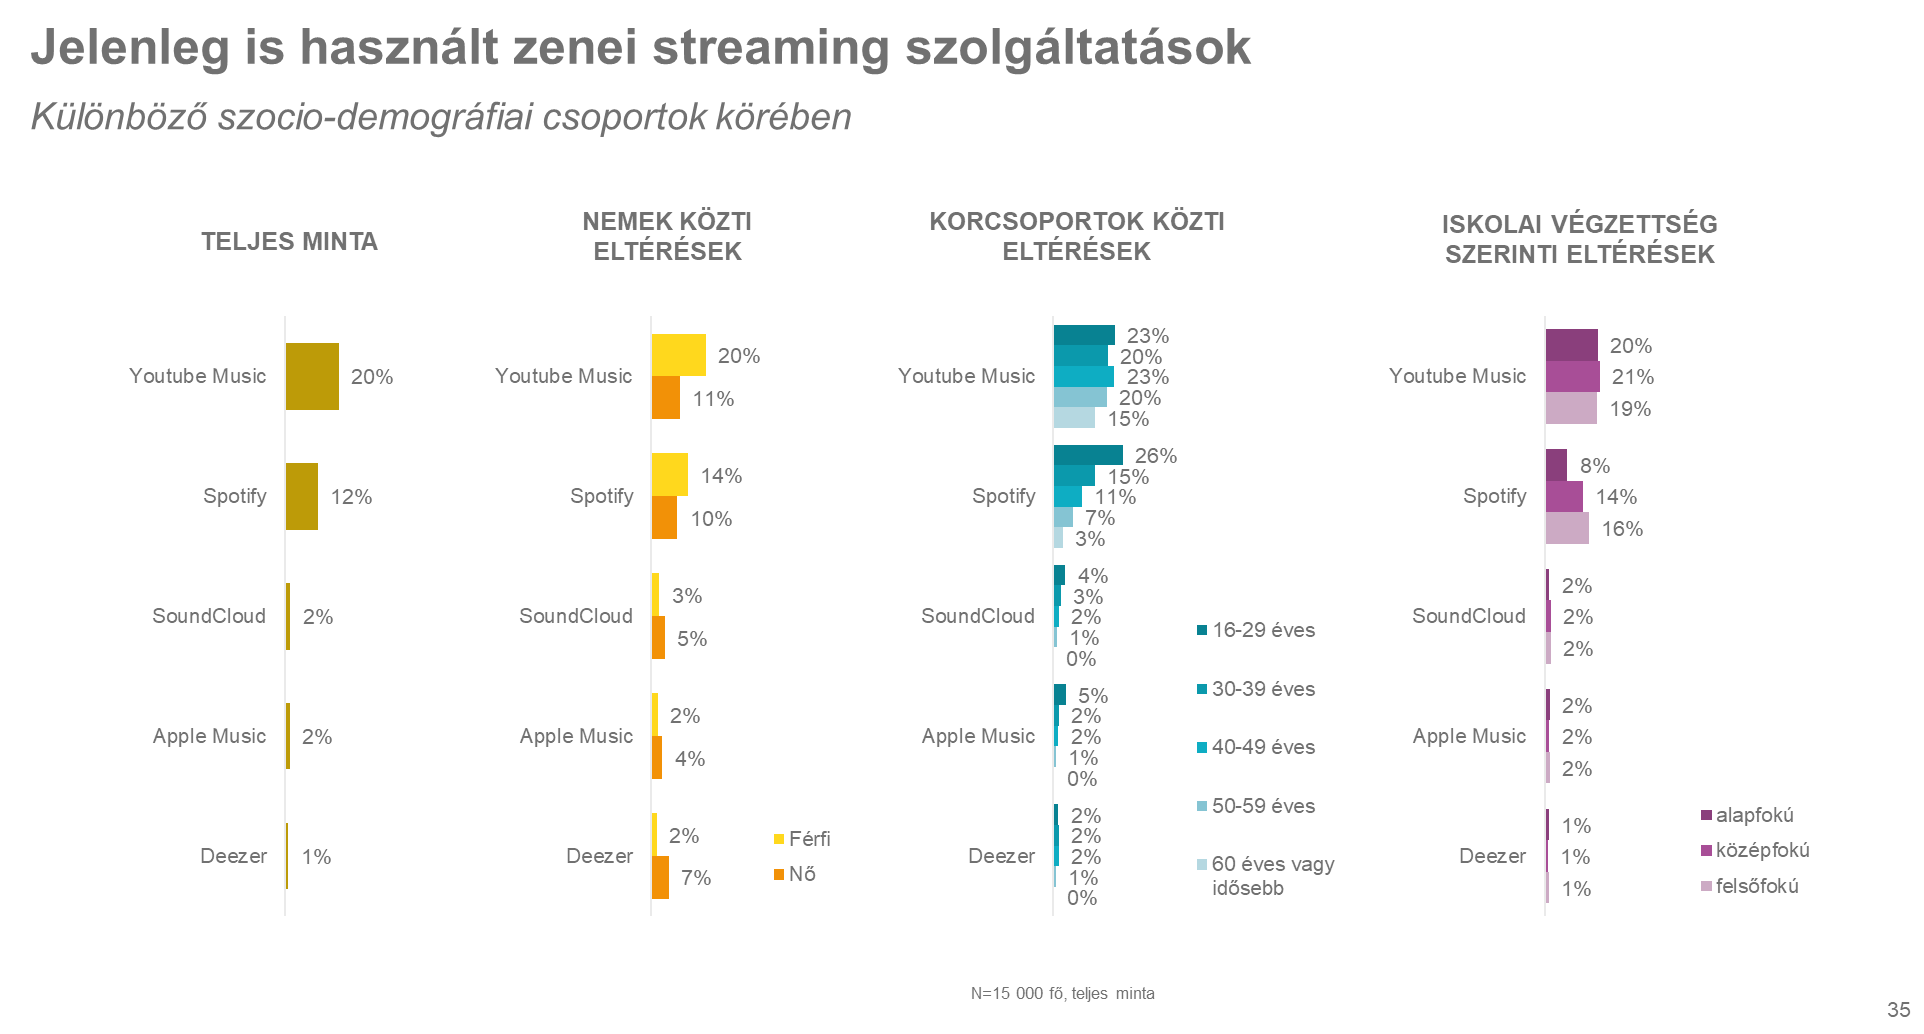 Diagram. Jelenleg is használt zenei streaming szolgáltatások Különböző szocio-demográfiai csoportok körében. Az ábrázolt adatok a kép alatti táblázatokban érhetők el.